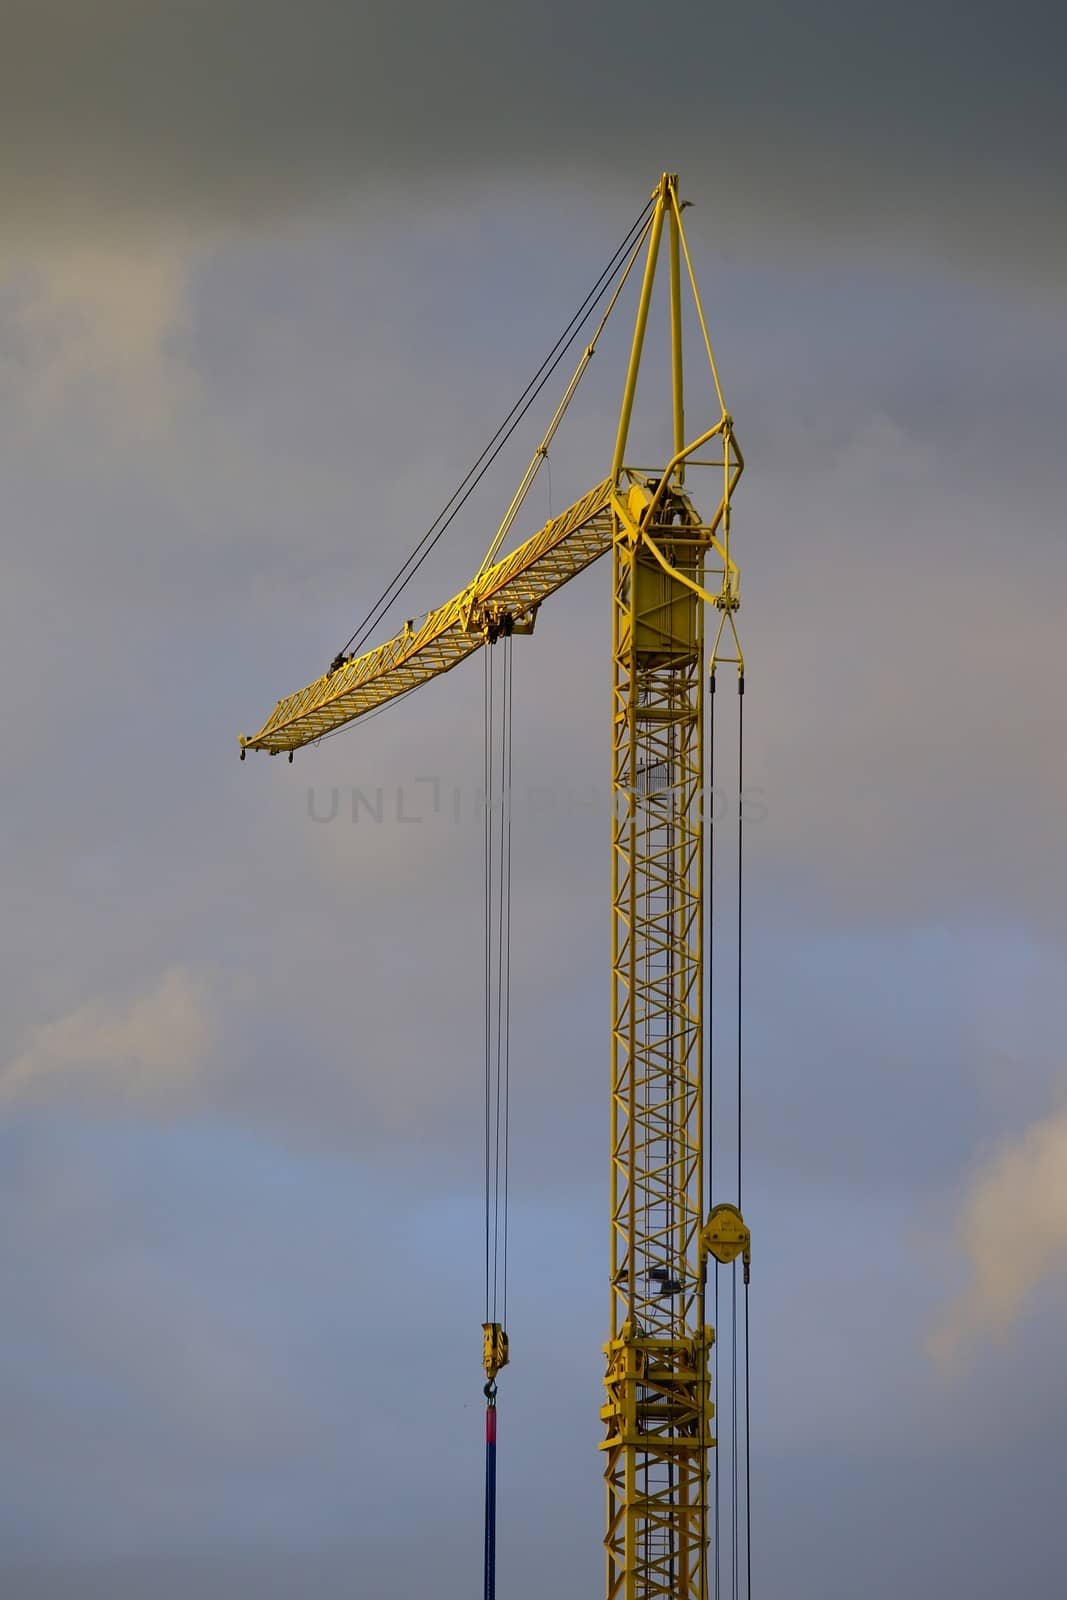 Construction Crane by Gudella